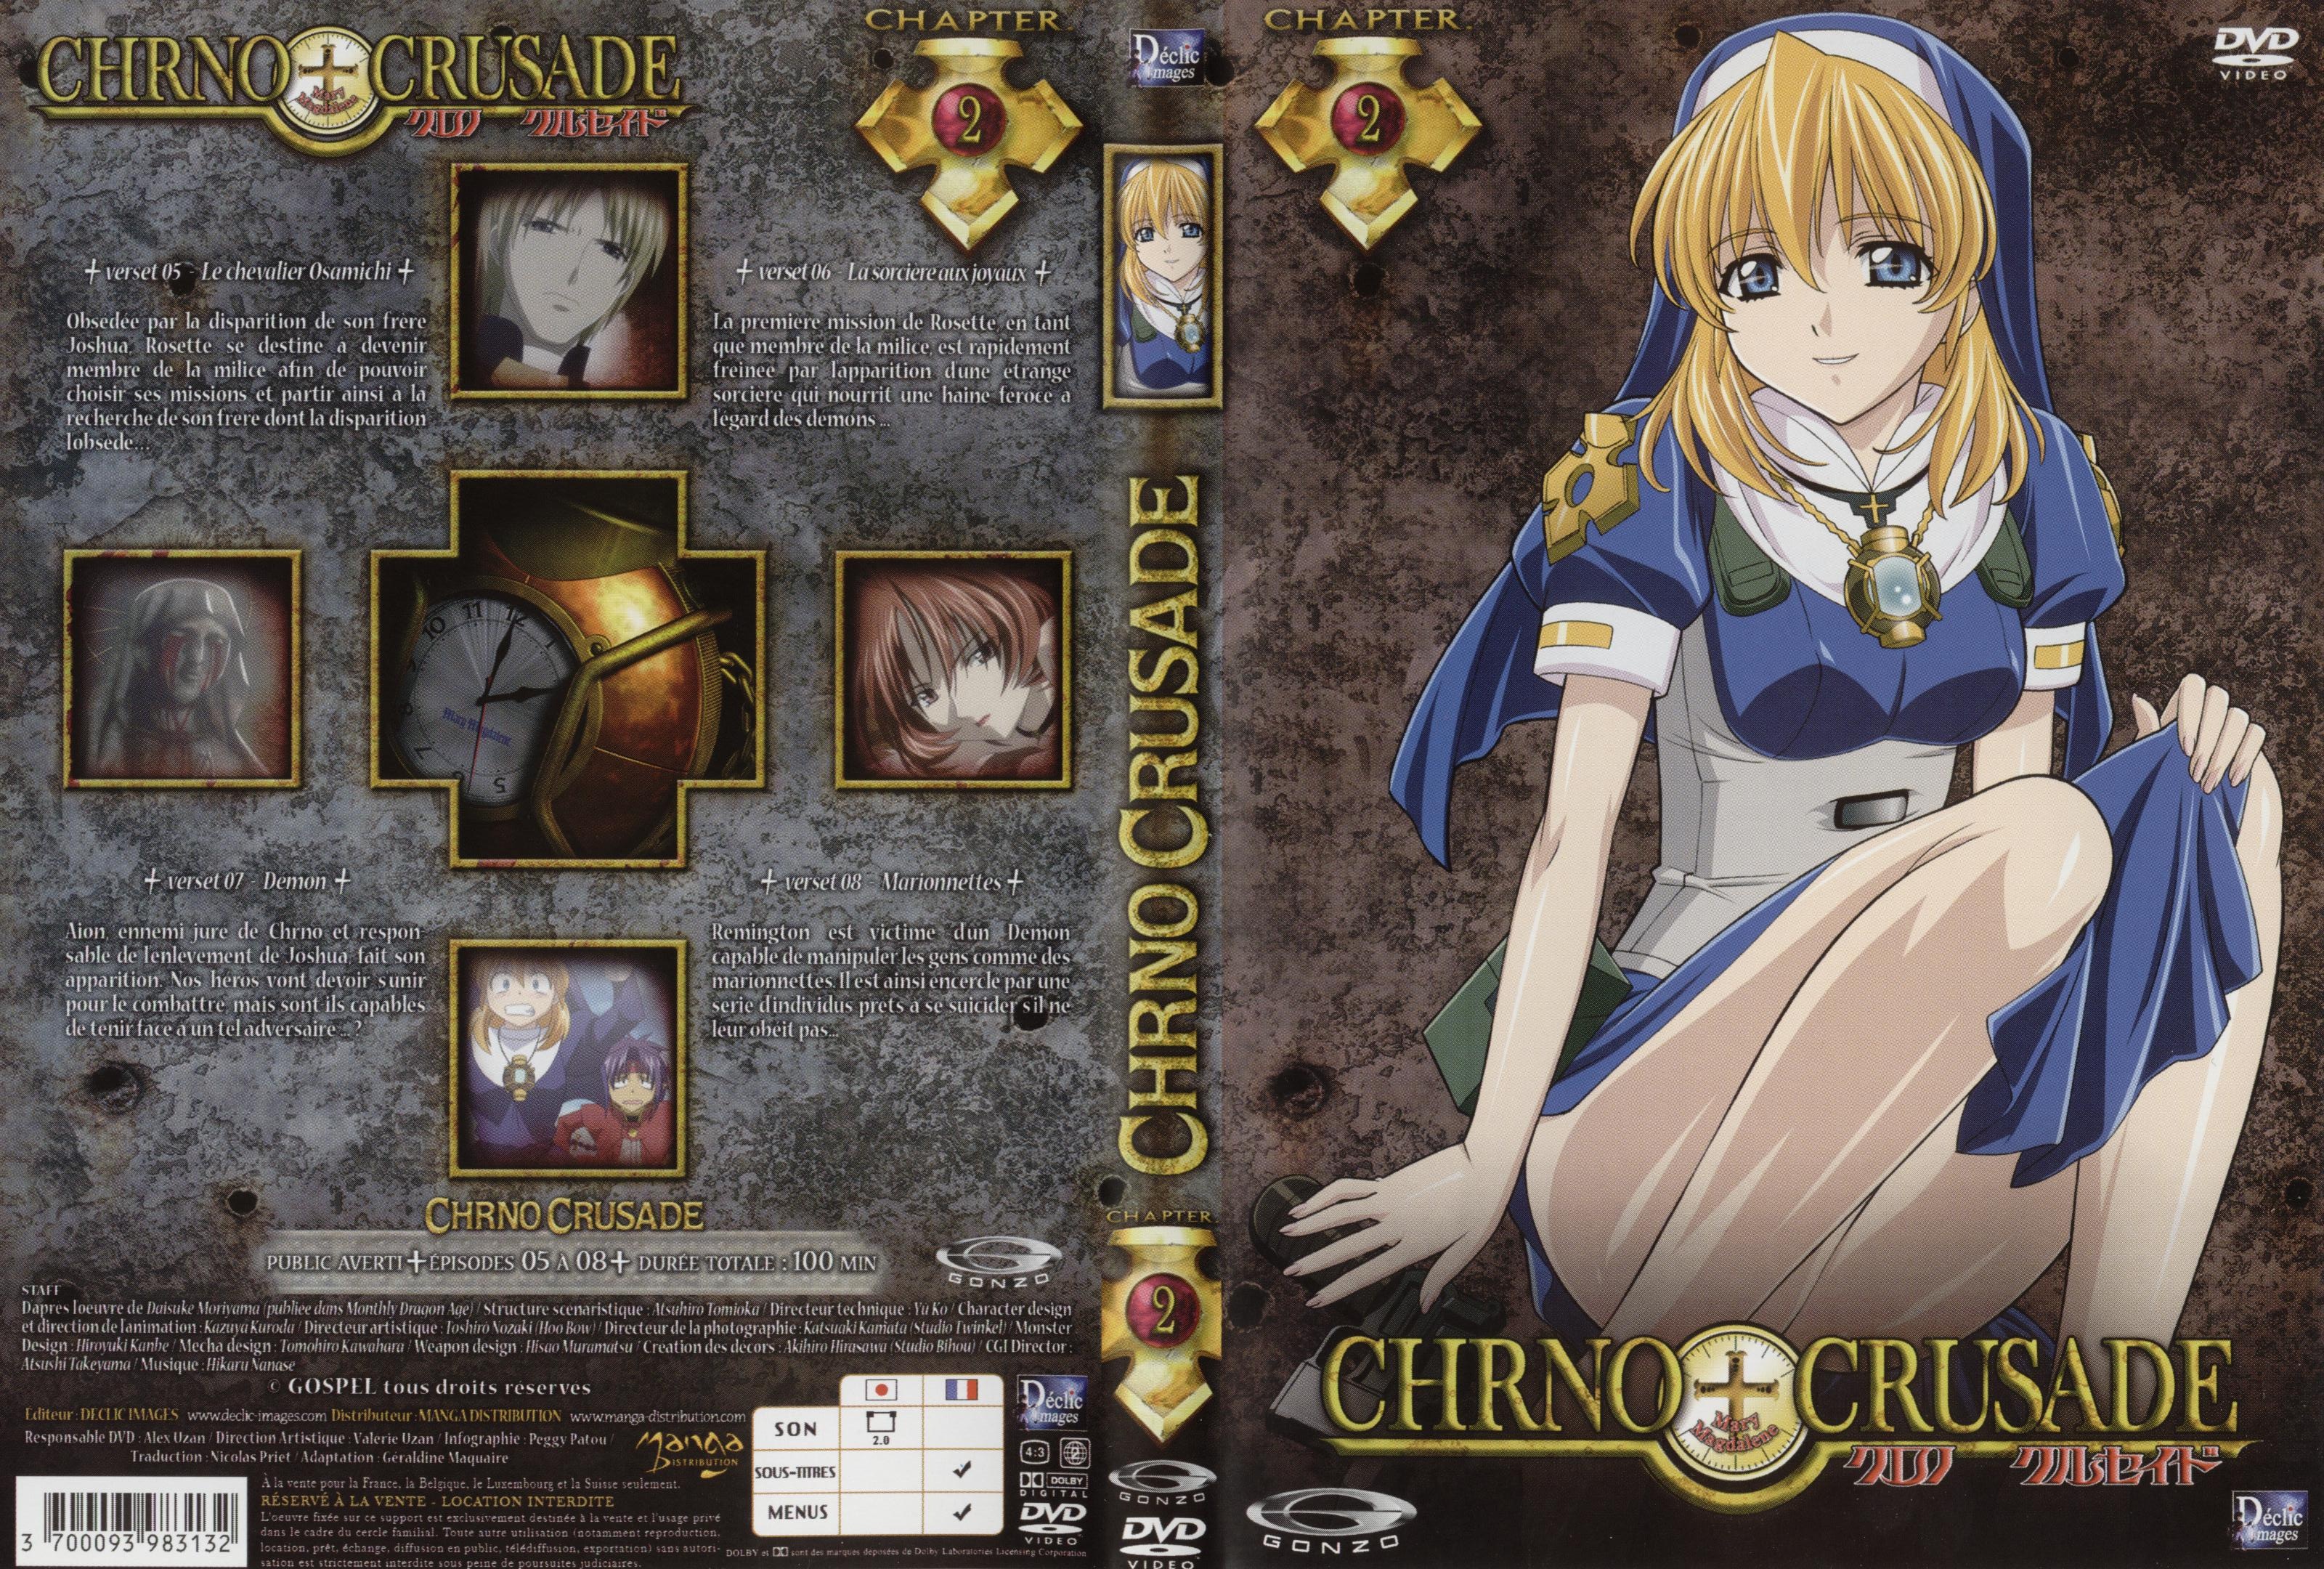 Jaquette DVD Chrno Crusade vol 2